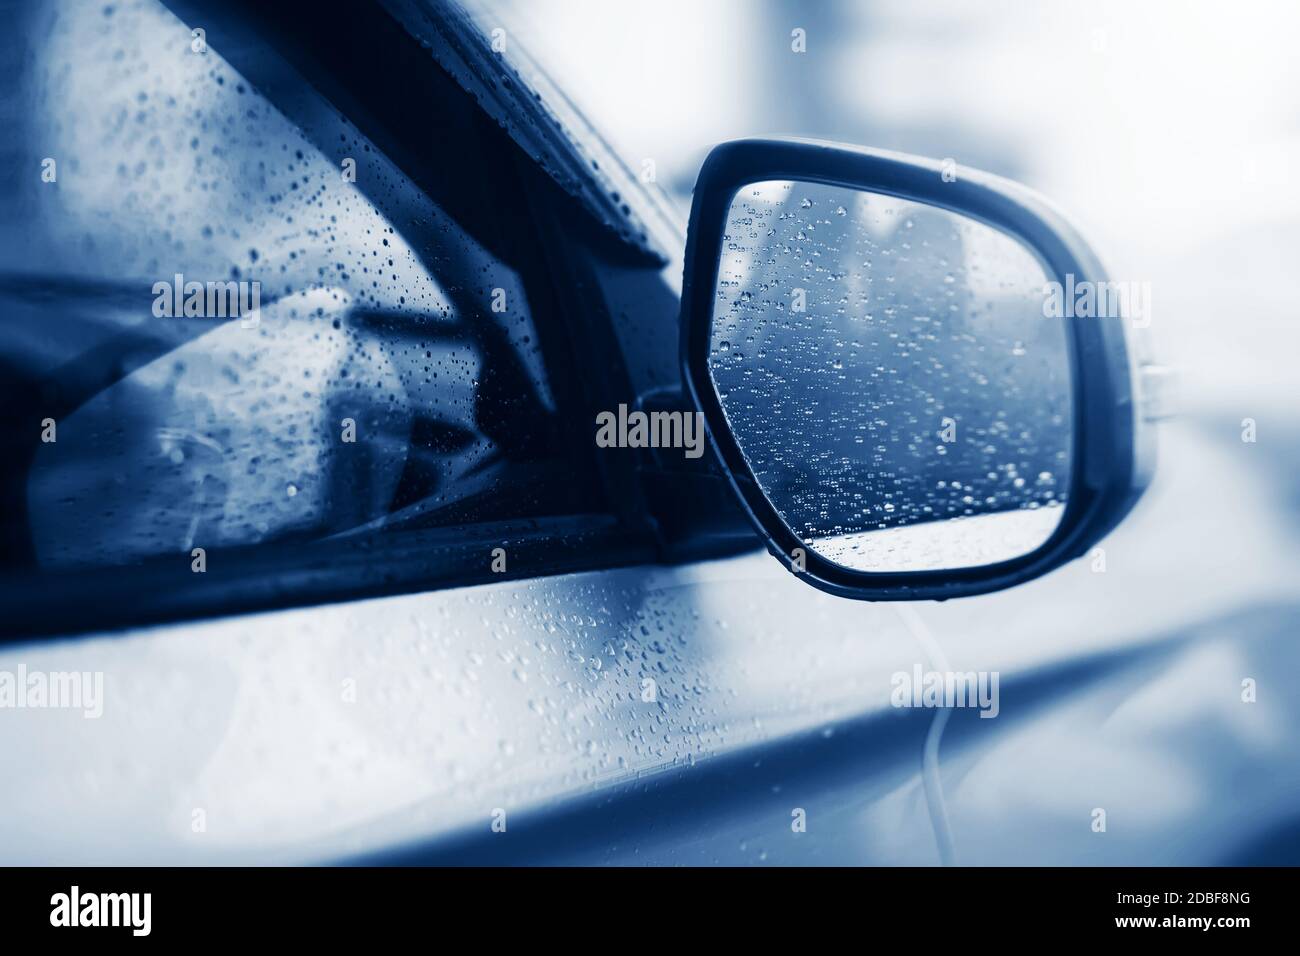 La voiture argentée légère roule rapidement par mauvais temps et il y a des gouttes de pluie claires sur les glaces et sur le rétroviseur. Mélancolie. Banque D'Images